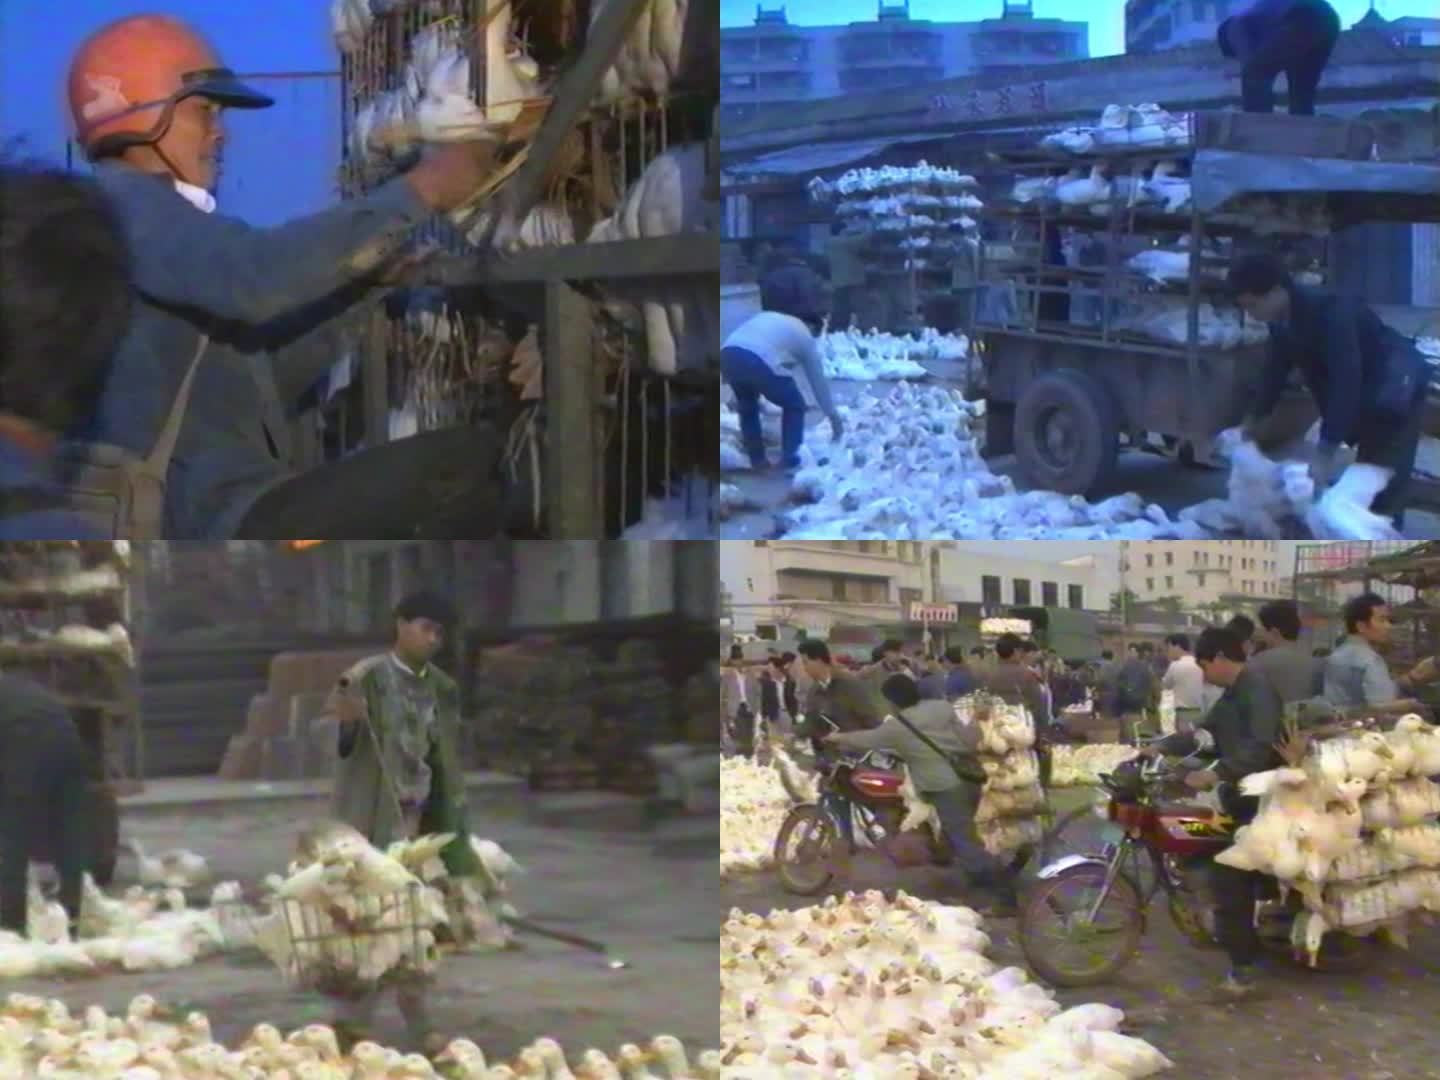 改革开放 8090年代 家禽农贸市场